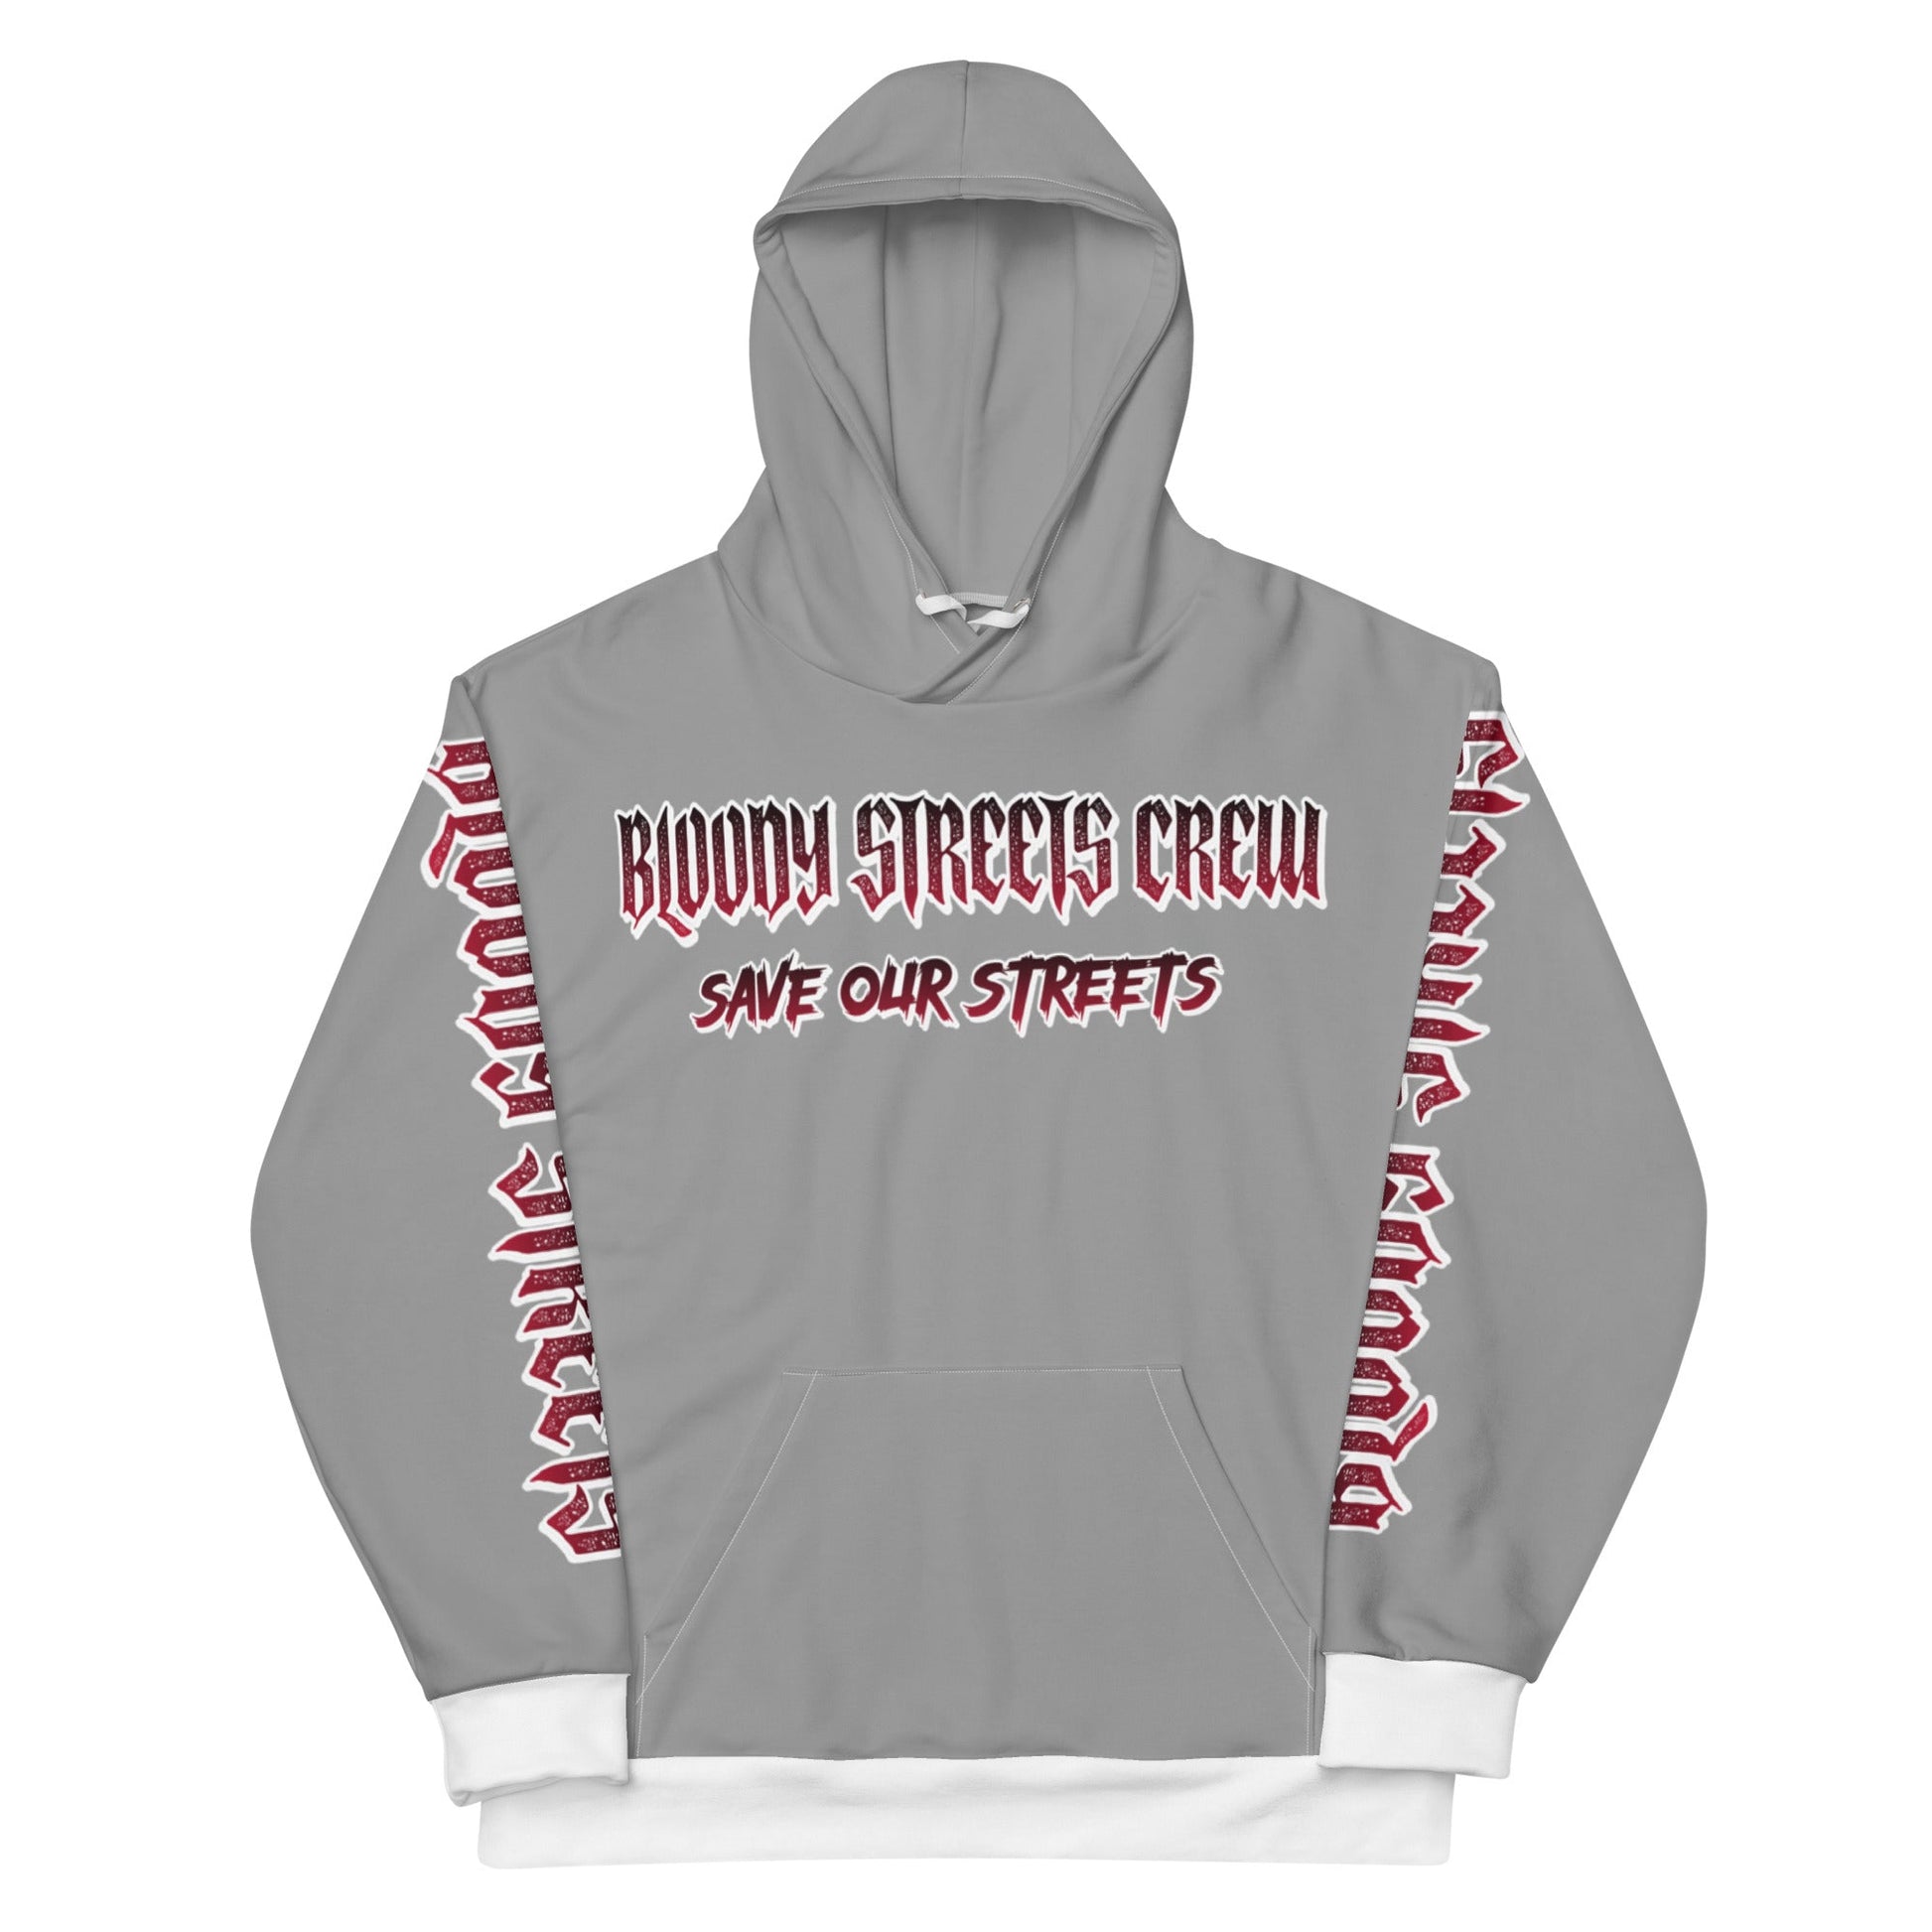 BLOODY STREETS Crew Member Streetwear Hoodie Gray - BLOODY-STREETS.DE Streetwear Herren und Damen Hoodies, T-Shirts, Pullis